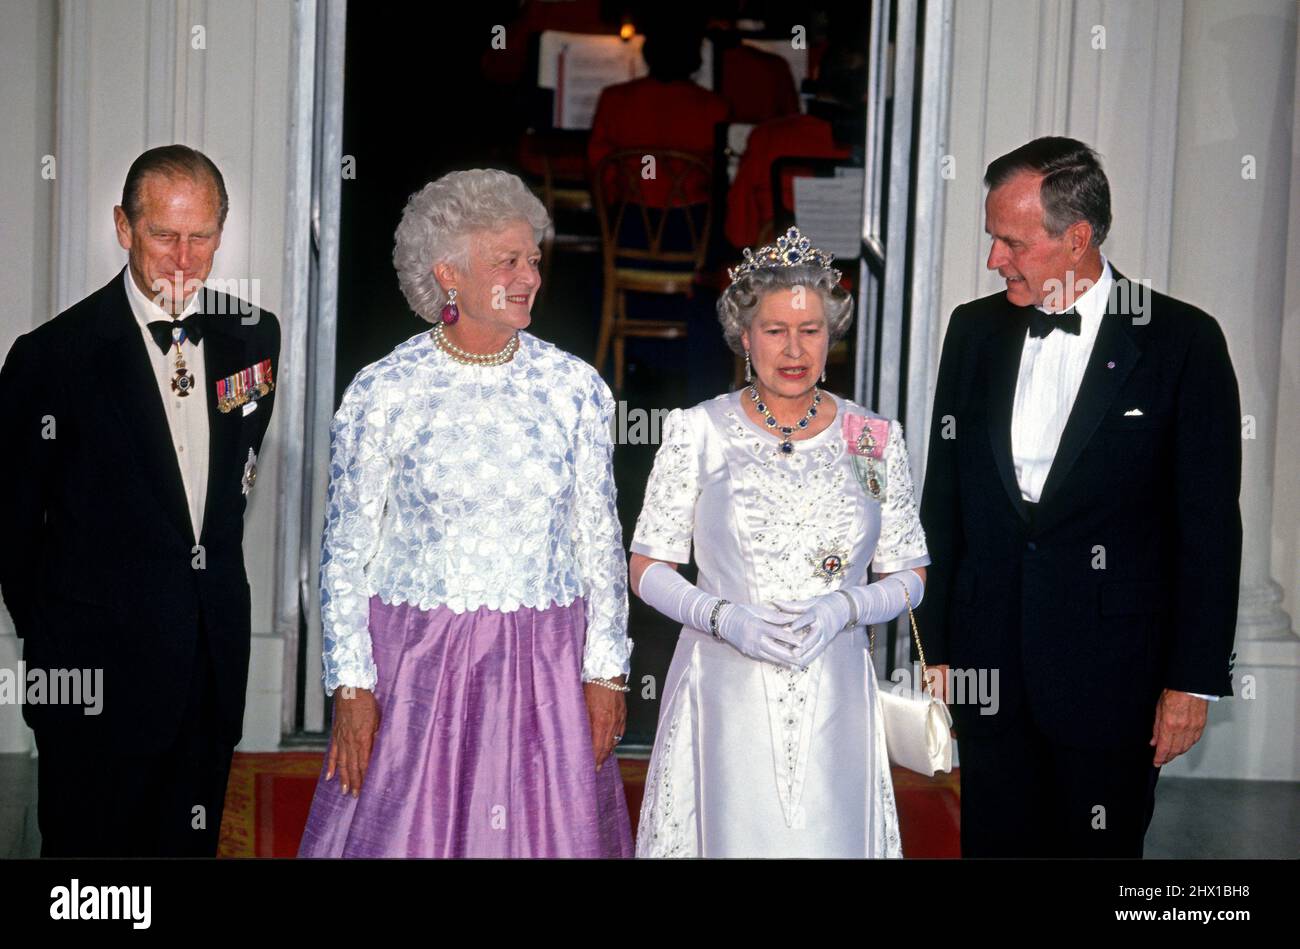 El Presidente de los Estados Unidos George H.W. Bush, derecha, y primera dama Barbara Bush, centro izquierda, bienvenida a la reina Isabel II de Gran Bretaña, centro derecha, y el príncipe Felipe, duque de Edimburgo, izquierda, Cuando llegan al Portico Norte de la Casa Blanca en Washington, DC para una Cena Estatal el 14 de mayo de 1991.Crédito: Arnie Sachs / CNP /MediaPunch Foto de stock